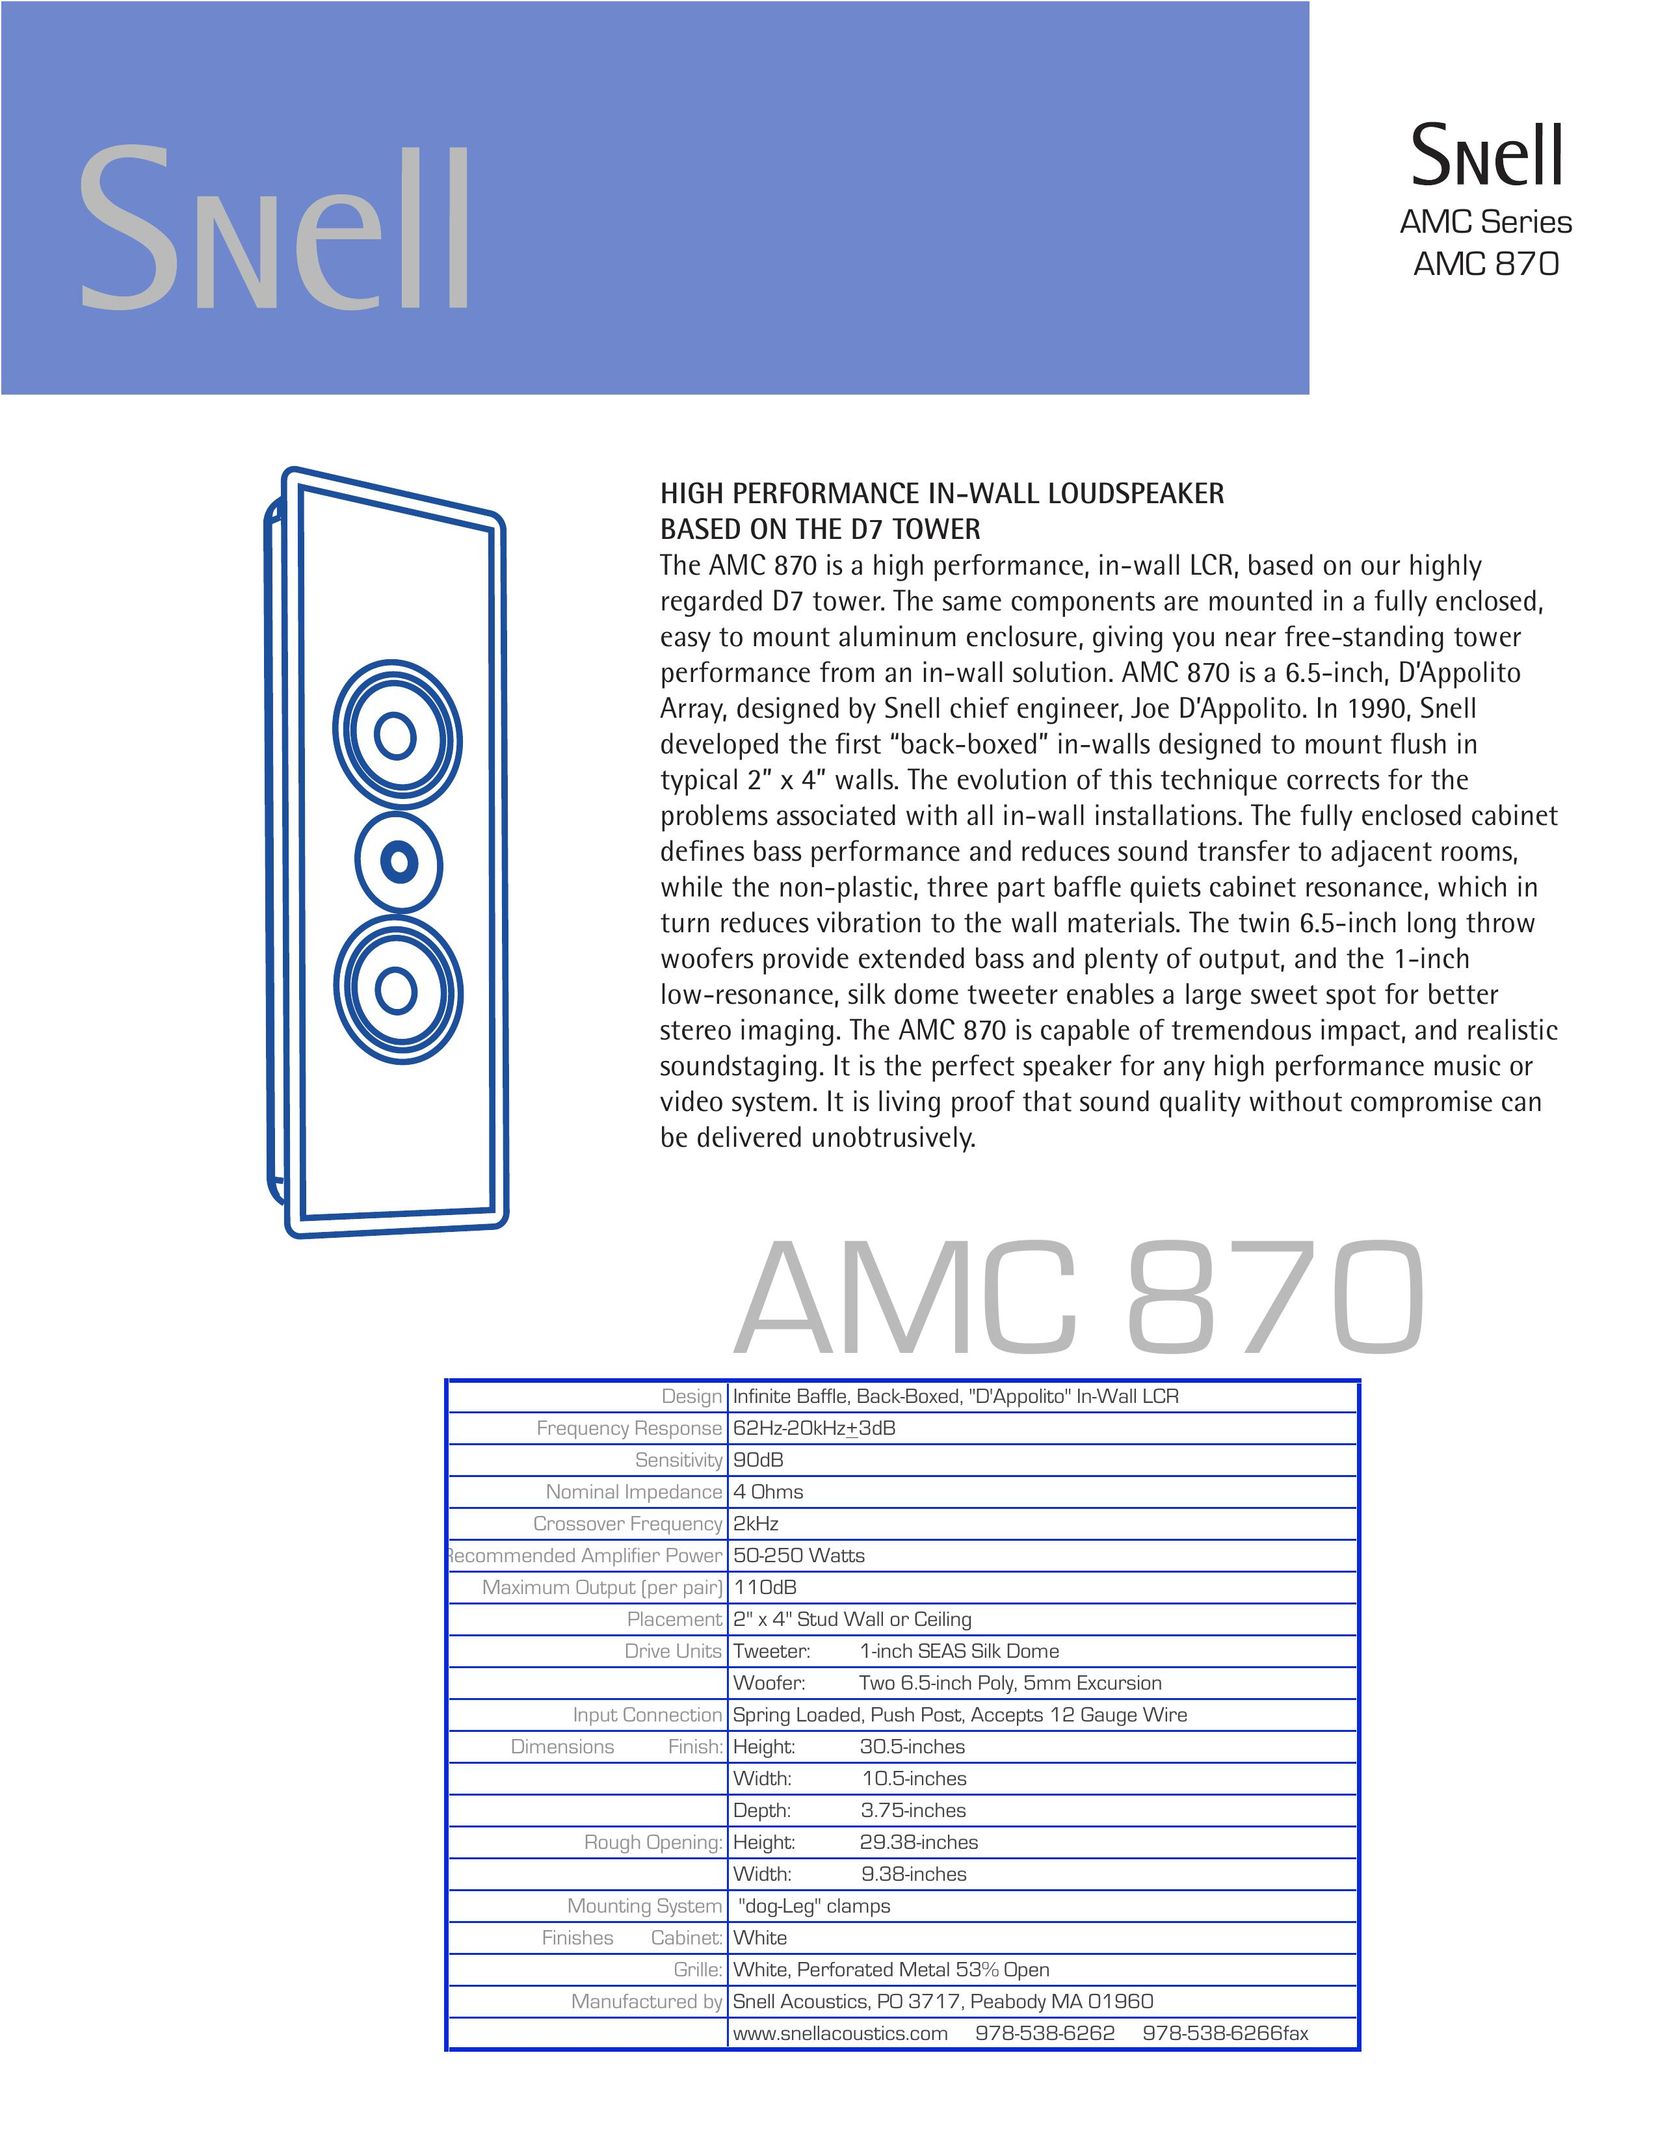 Snell Acoustics AMC 870 Speaker User Manual